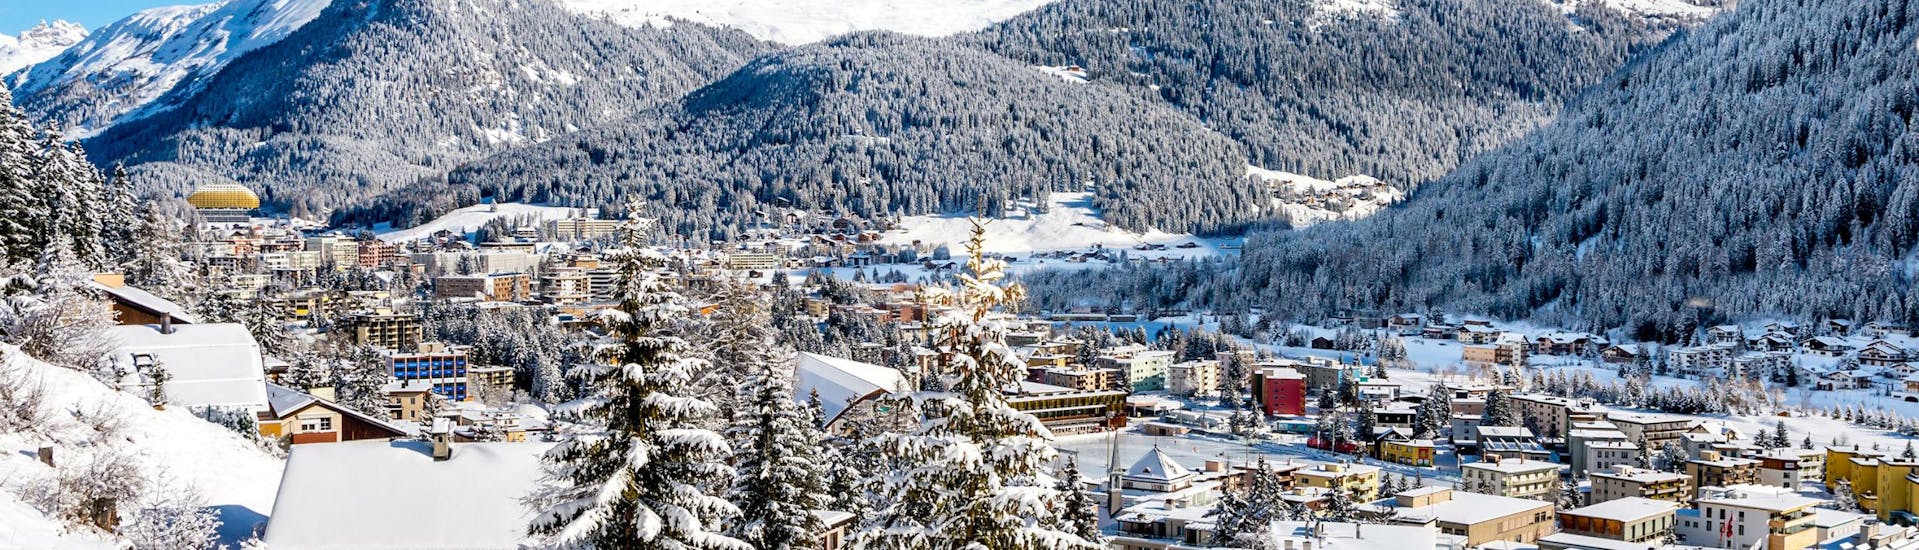 Vue sur la ville suisse de Davos, connue non seulement pour le Forum économique mondial, mais aussi pour ses écoles de ski qui offrent des cours de ski à ceux qui veulent apprendre à skier.